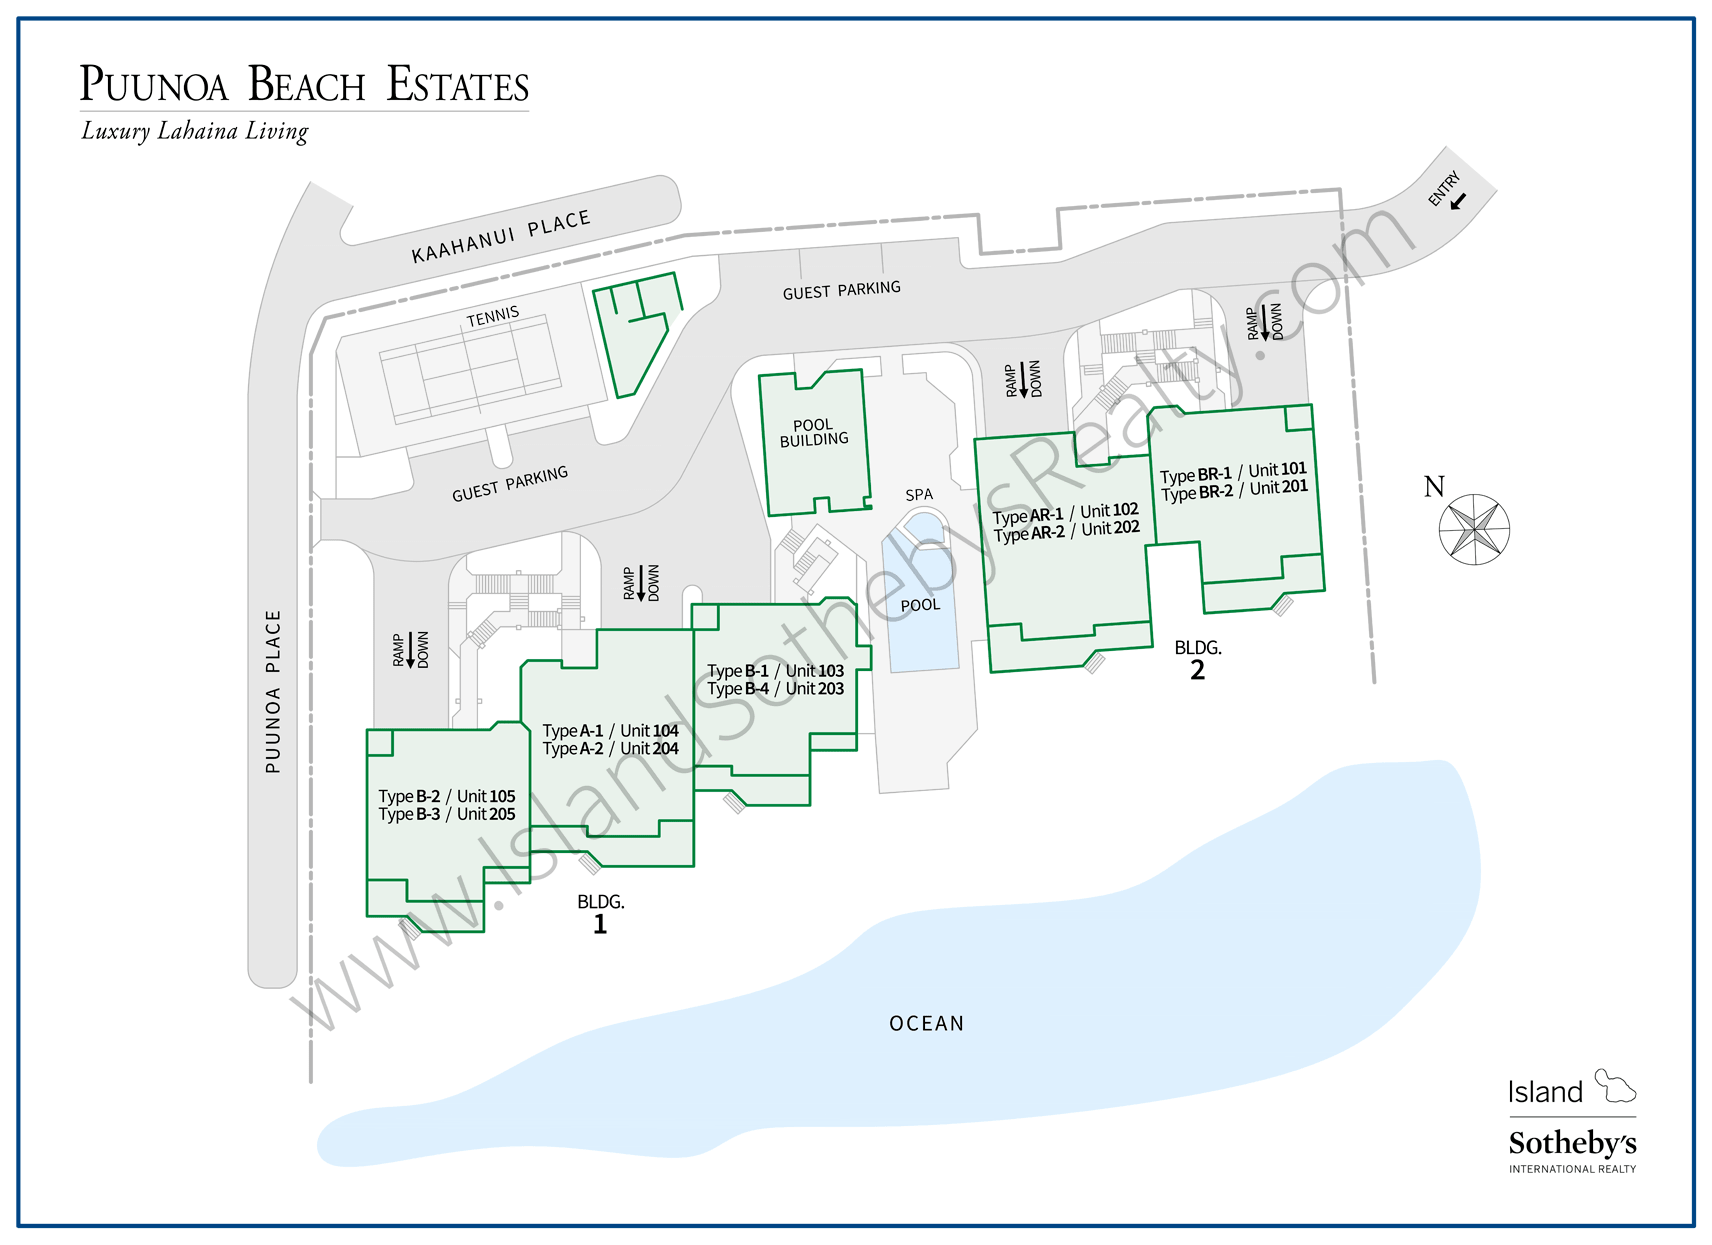 Map of Puunoa Beach Estates